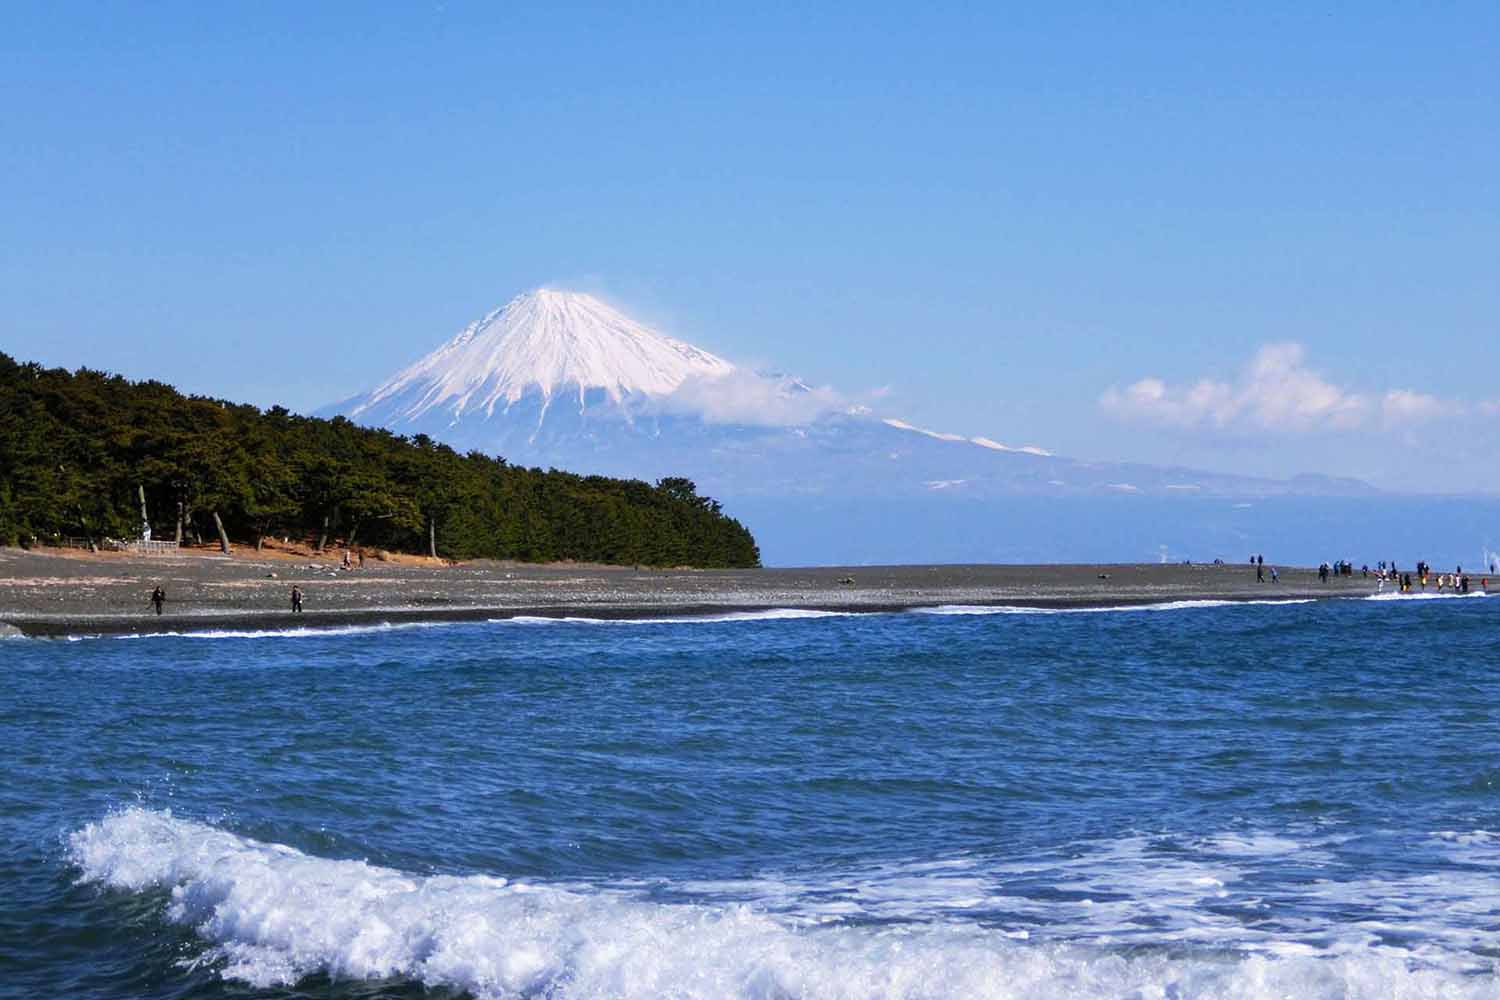 มิโฮะโนะมัตสึบาระส่วนหนึ่งของ “ภูเขาไฟฟูจิ” มรดกโลกทางด้านวัฒนธรรม